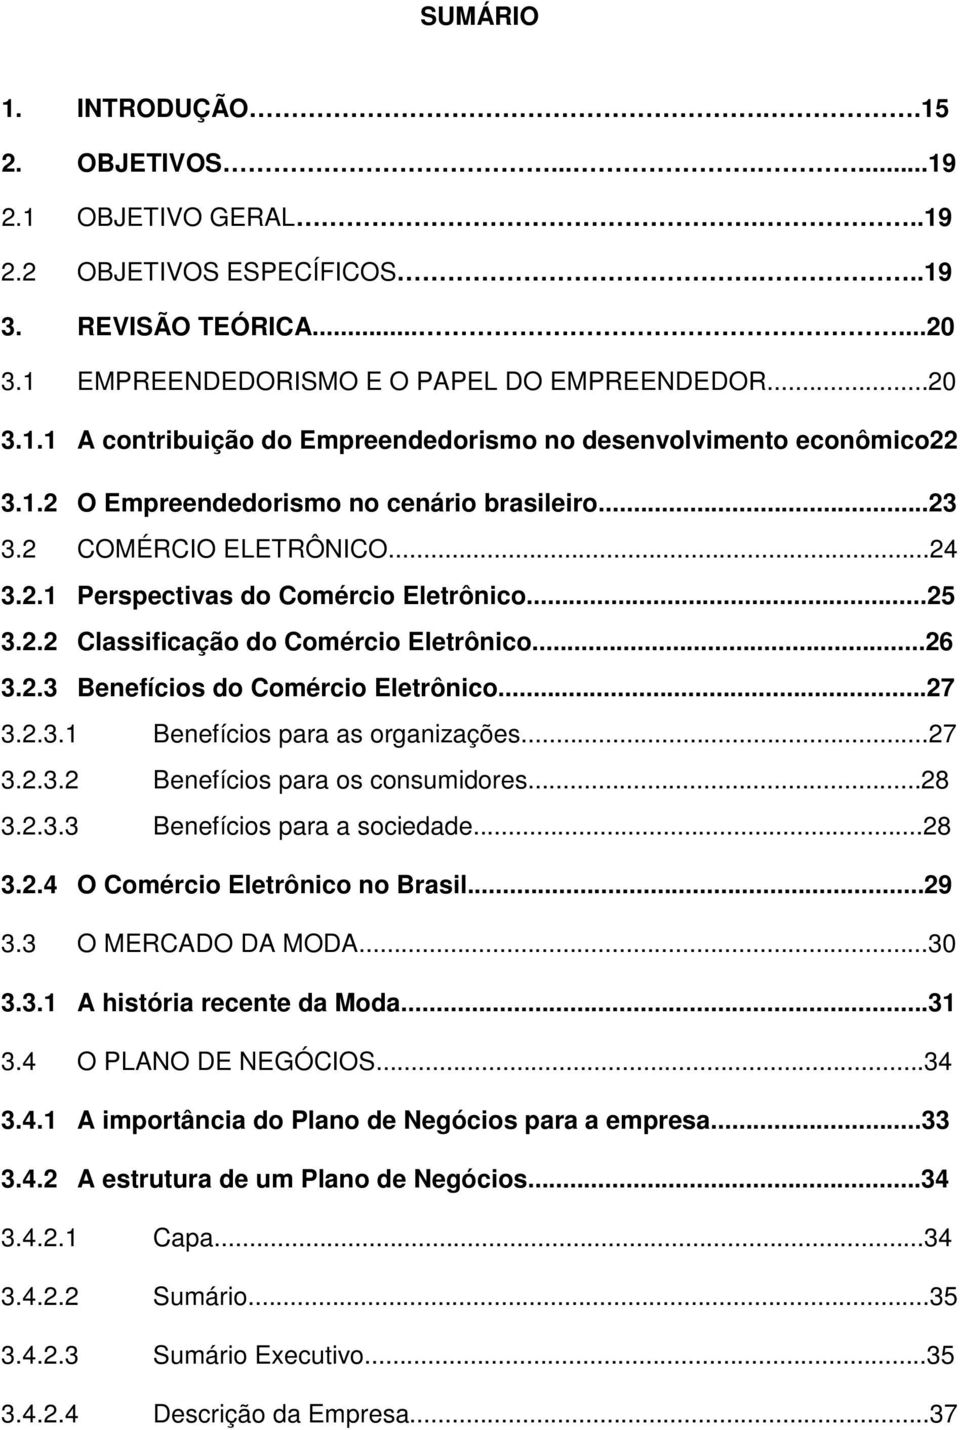 ..27 3.2.3.1 Benefícios para as organizações...27 3.2.3.2 Benefícios para os consumidores...28 3.2.3.3 Benefícios para a sociedade...28 3.2.4 O Comércio Eletrônico no Brasil...29 3.